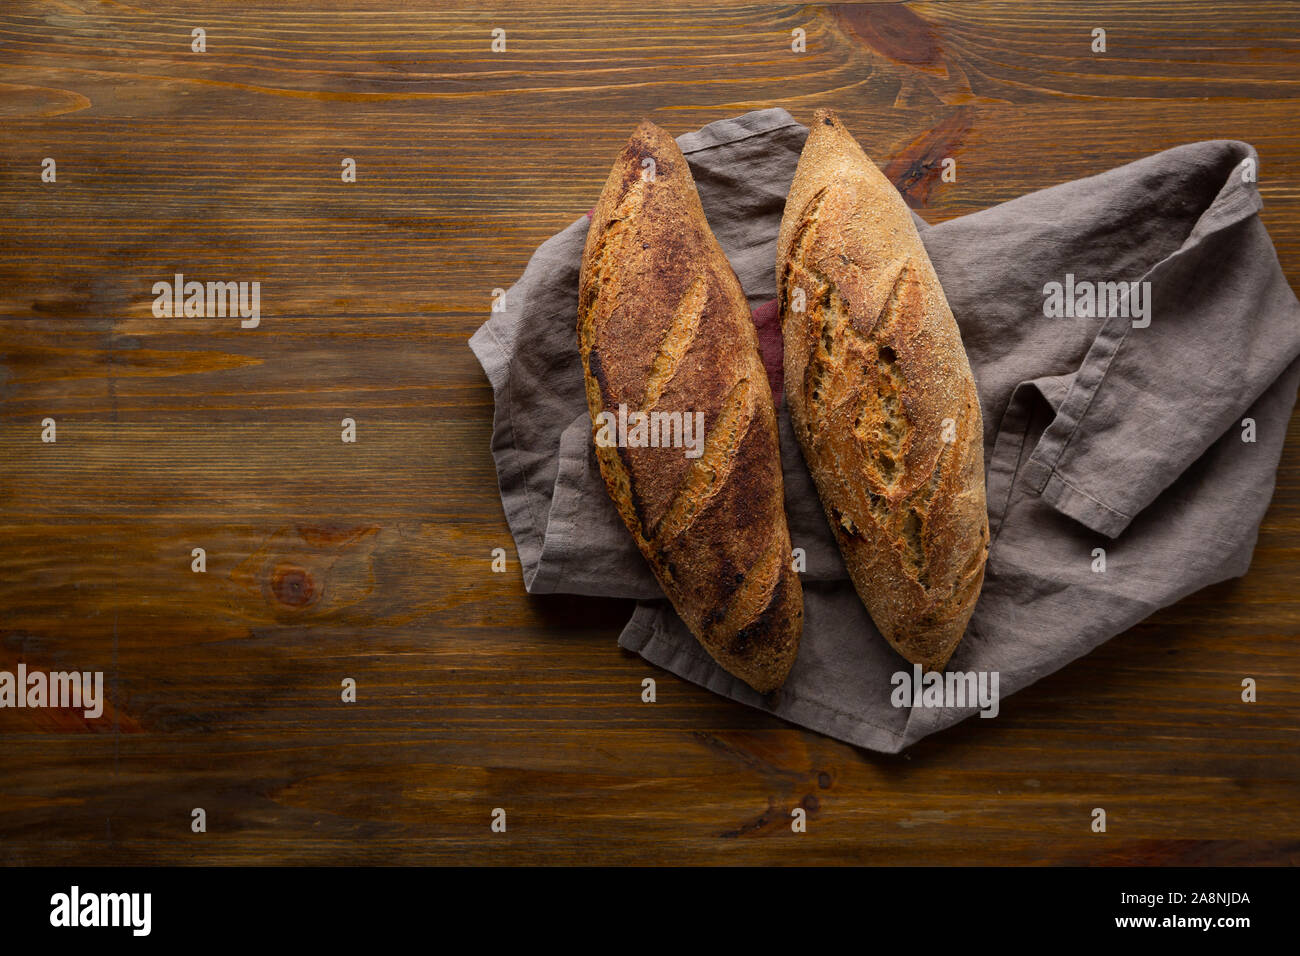 Deux miche de pain artisanal Vue de dessus sur fond de bois Banque D'Images